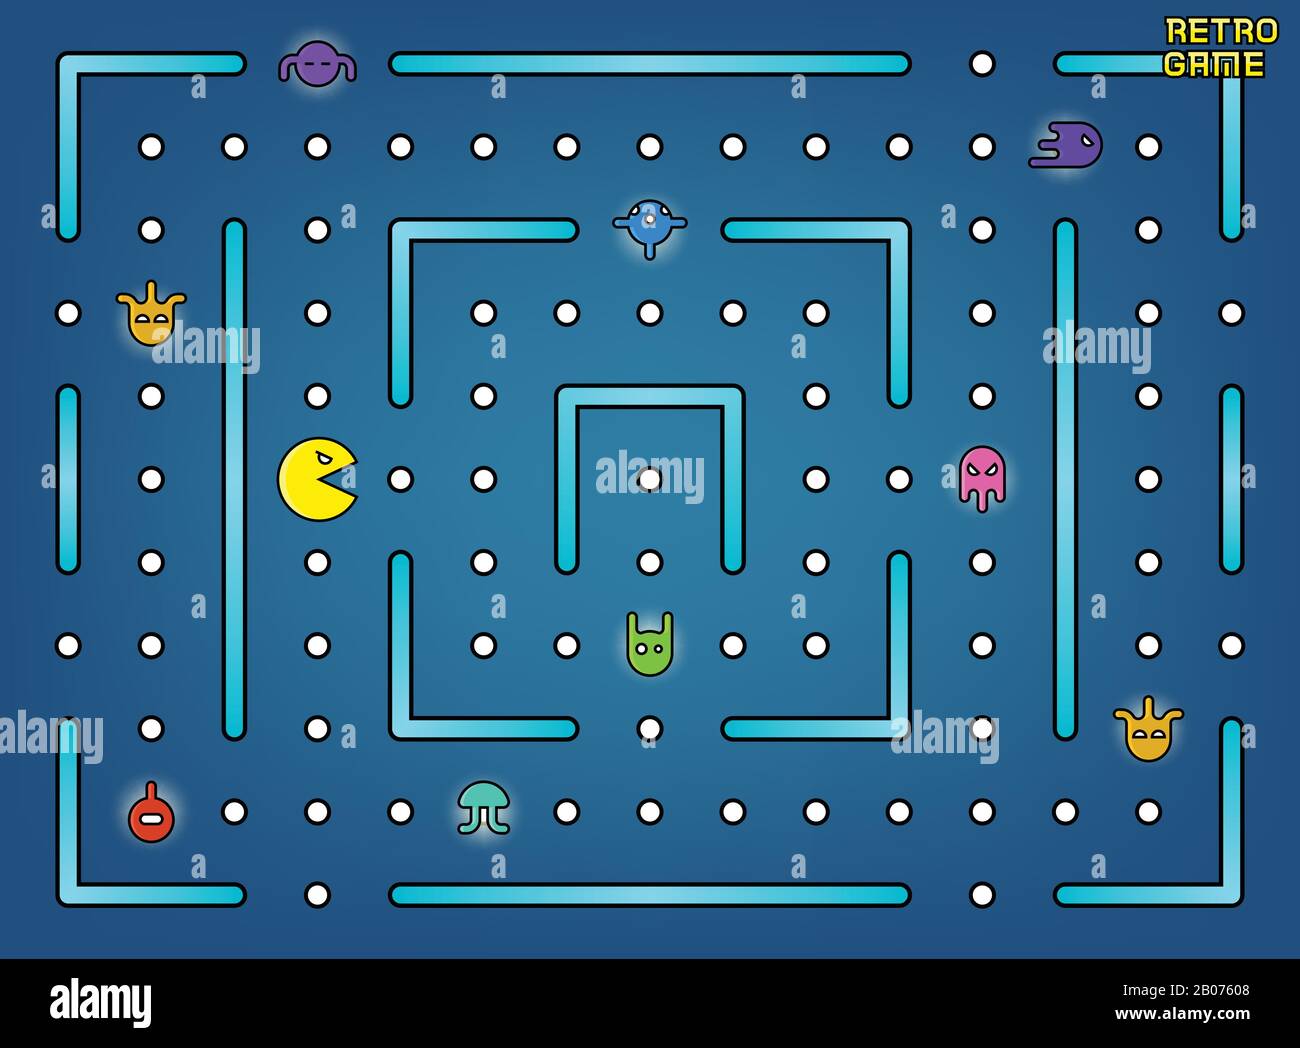 Pacman wie Videospiele mit Geistern, Labyrinth und Benutzeroberflächenvektor. Retro-Spiel mit Zeichentrick-Monsterillustration Stock Vektor